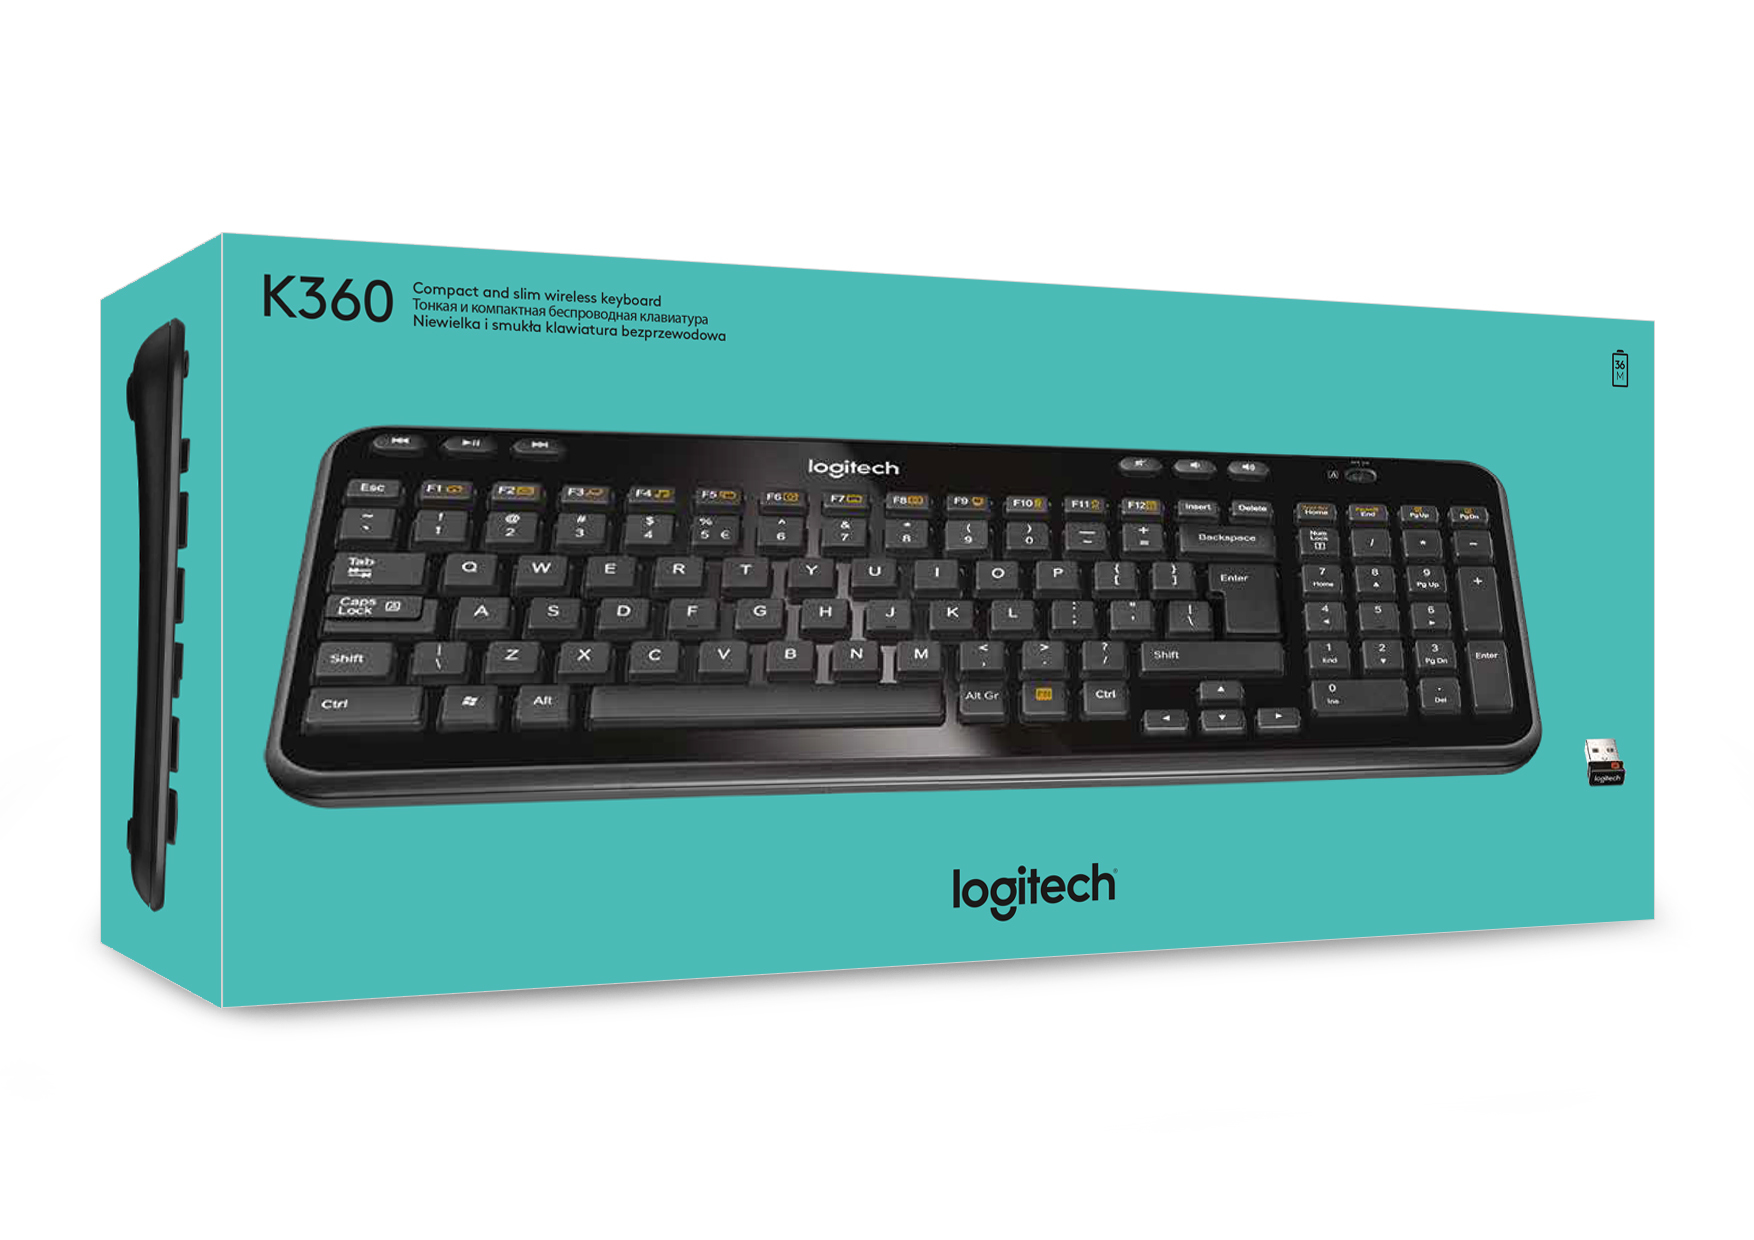 Logitech Wireless Keyboard K360, 1 in distributor/wholesale stock for ...